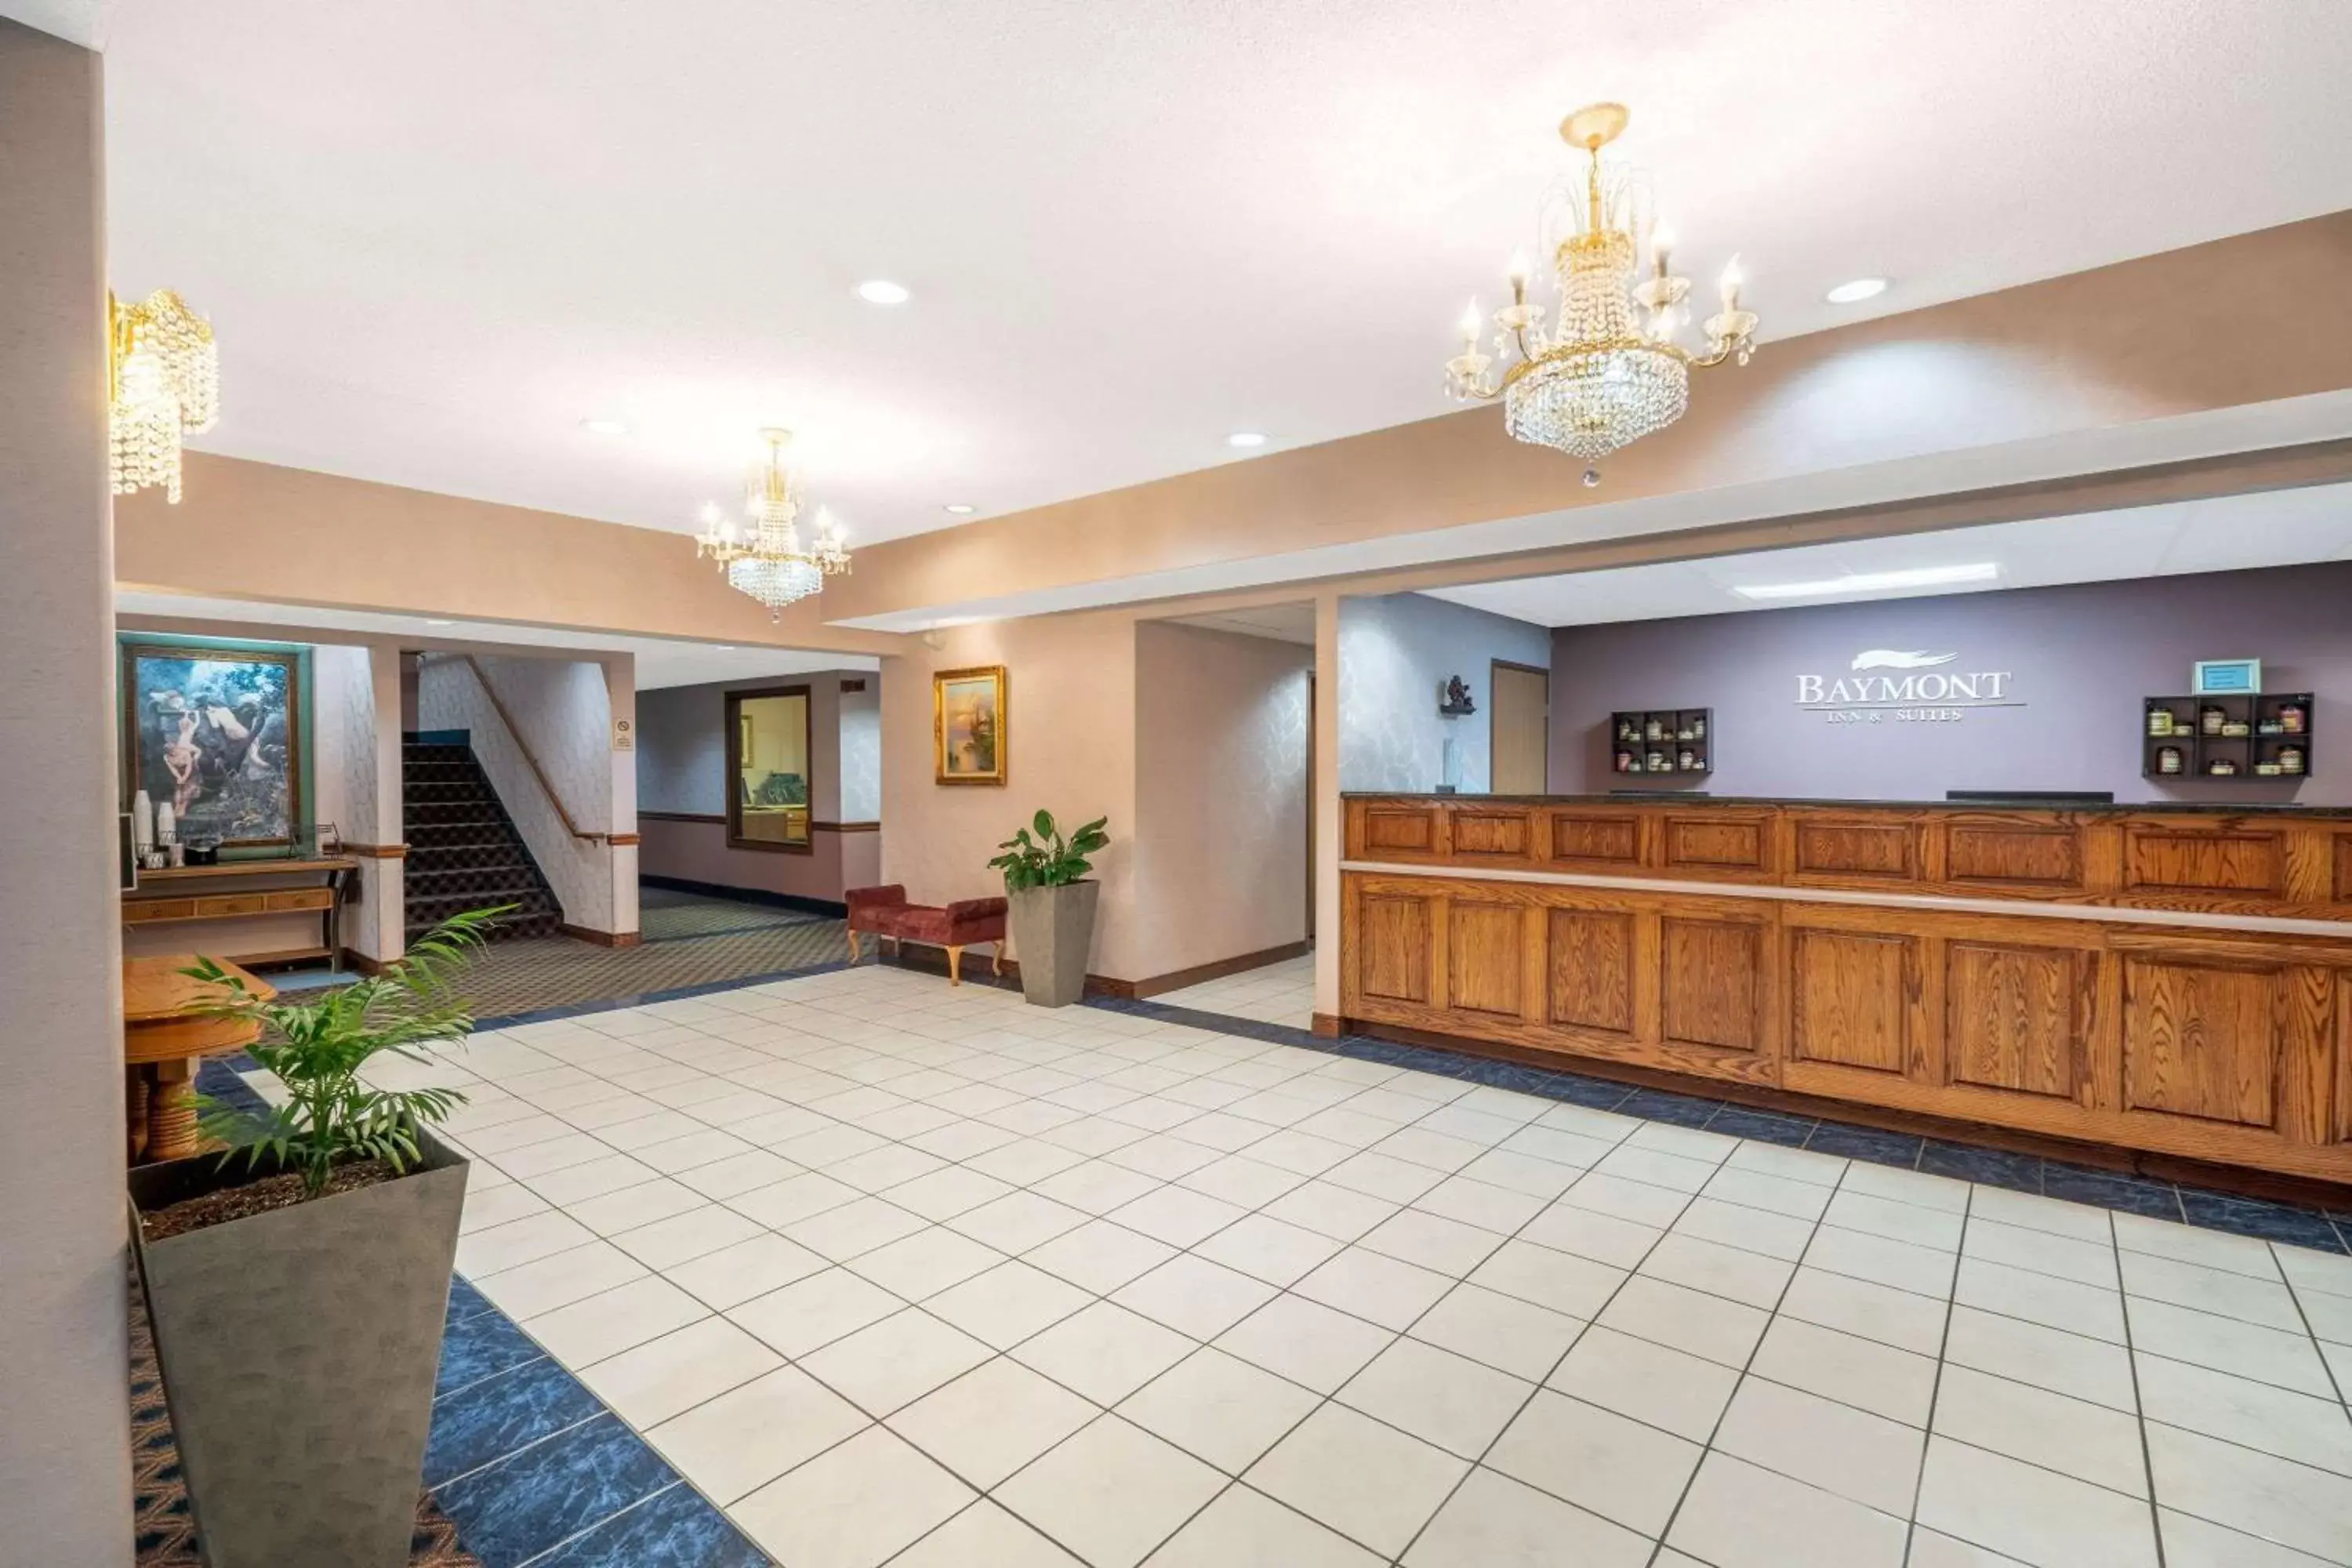 Lobby or reception, Lobby/Reception in Baymont by Wyndham Albany